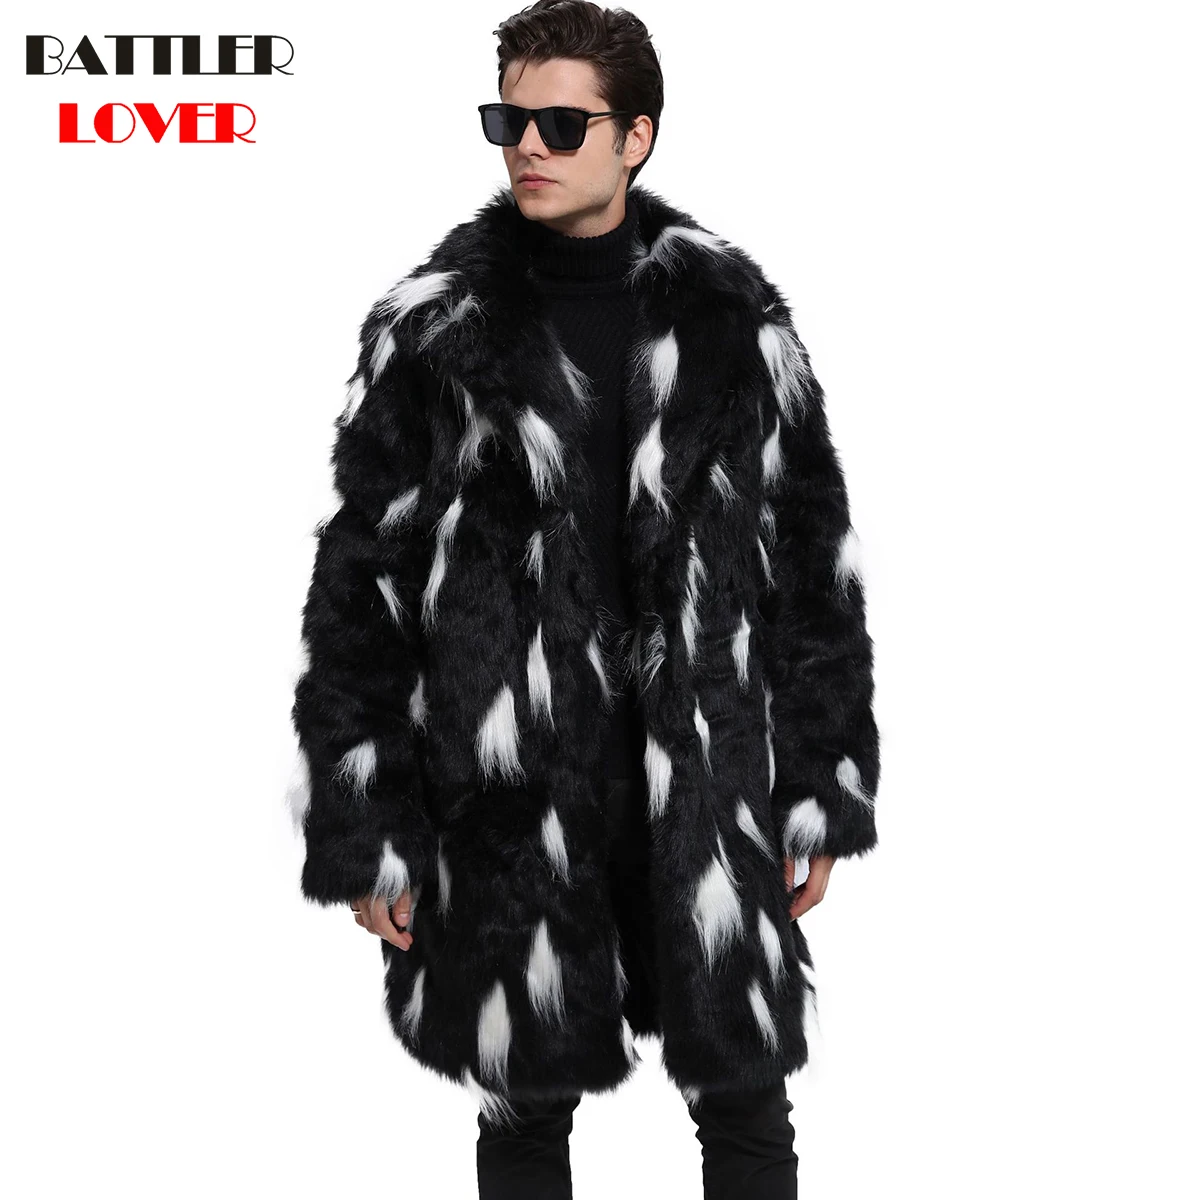 Мужское меховое пальто, зимняя верхняя одежда из искусственного меха с одной стороны, пальто, Мужская парка в стиле панк, куртки, длинные кожаные пальто из натурального меха, брендовая одежда